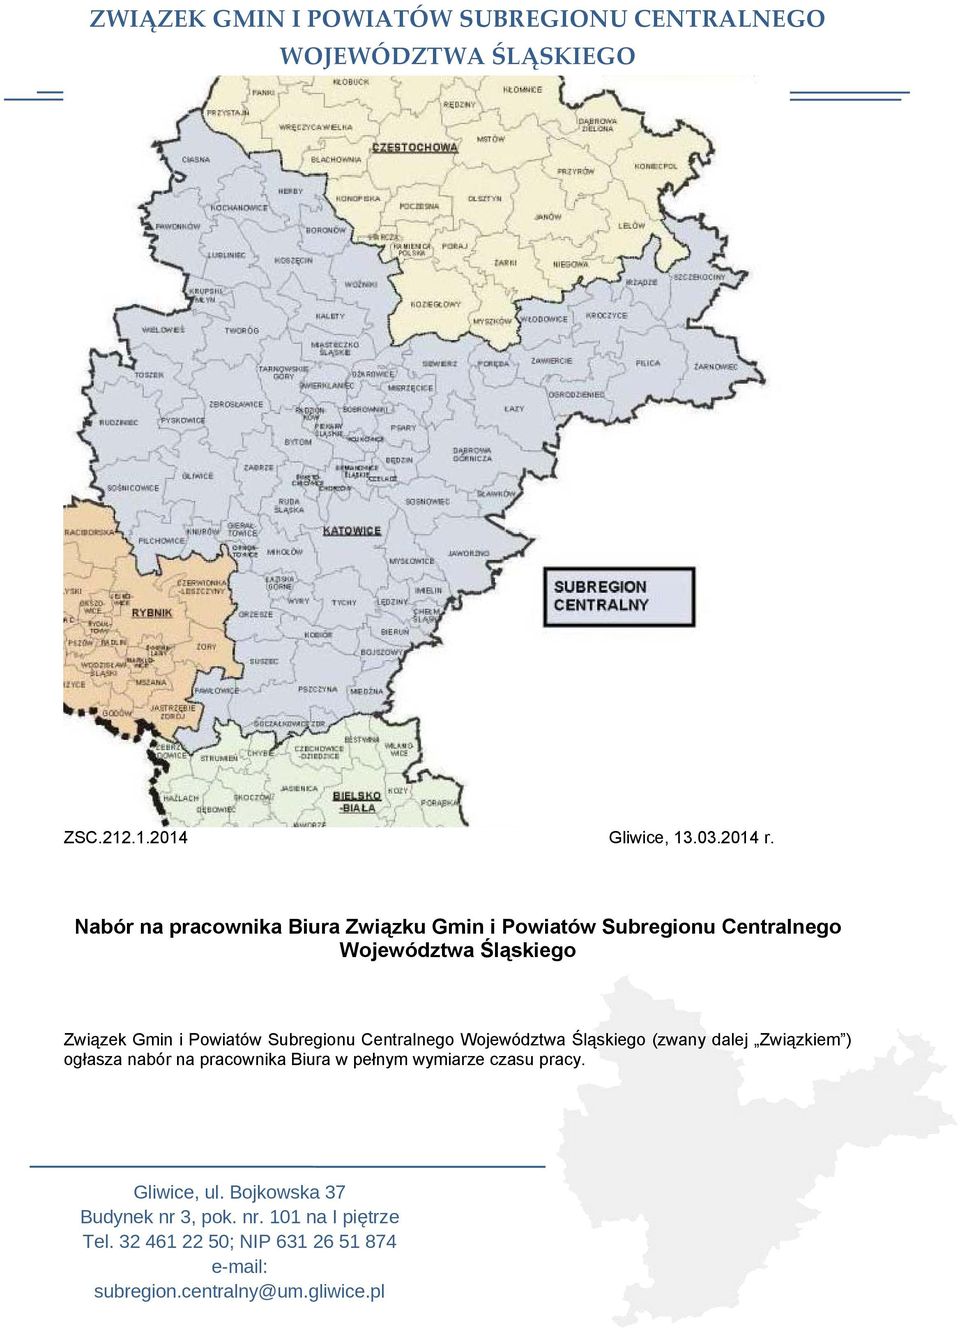 Województwa Śląskiego Związek Gmin i Powiatów Subregionu Centralnego